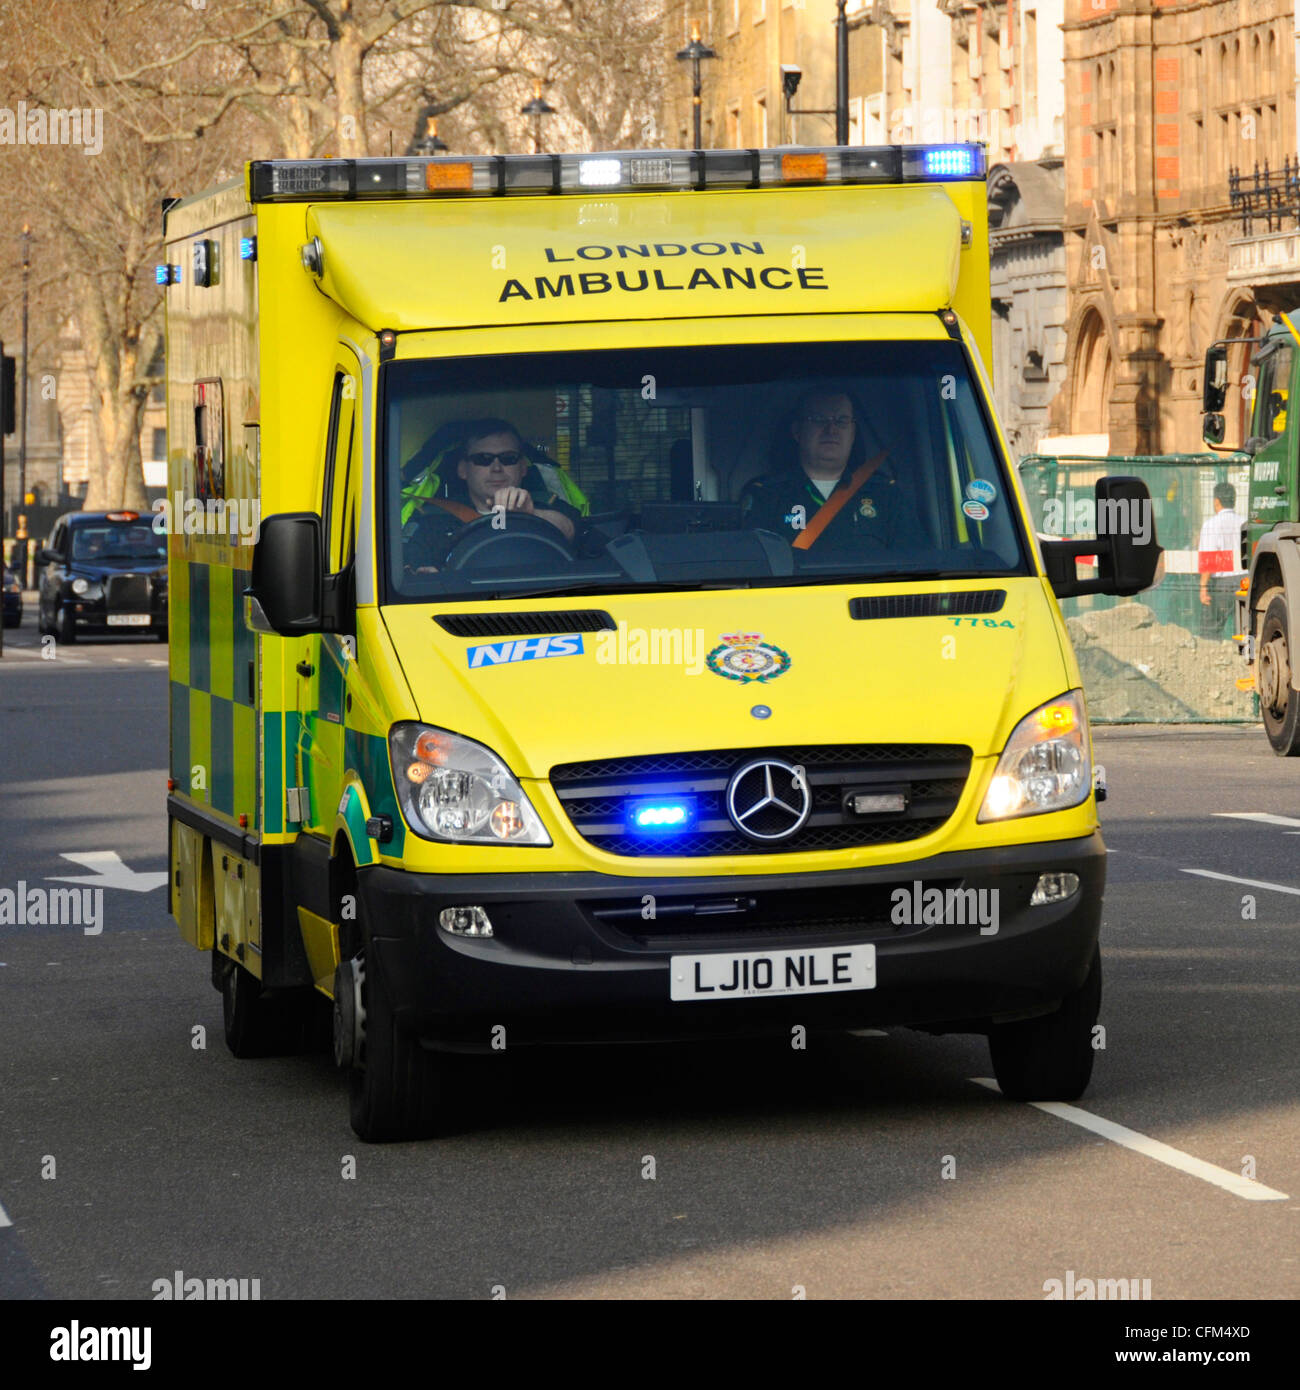 NHS LONDON REGNO UNITO DI EMERGENZA ambulanza SOS Call National Health Service paramedico equipaggio a bordo risponde 999 chiamata guida e velocizzando il blu lampeggiante Foto Stock